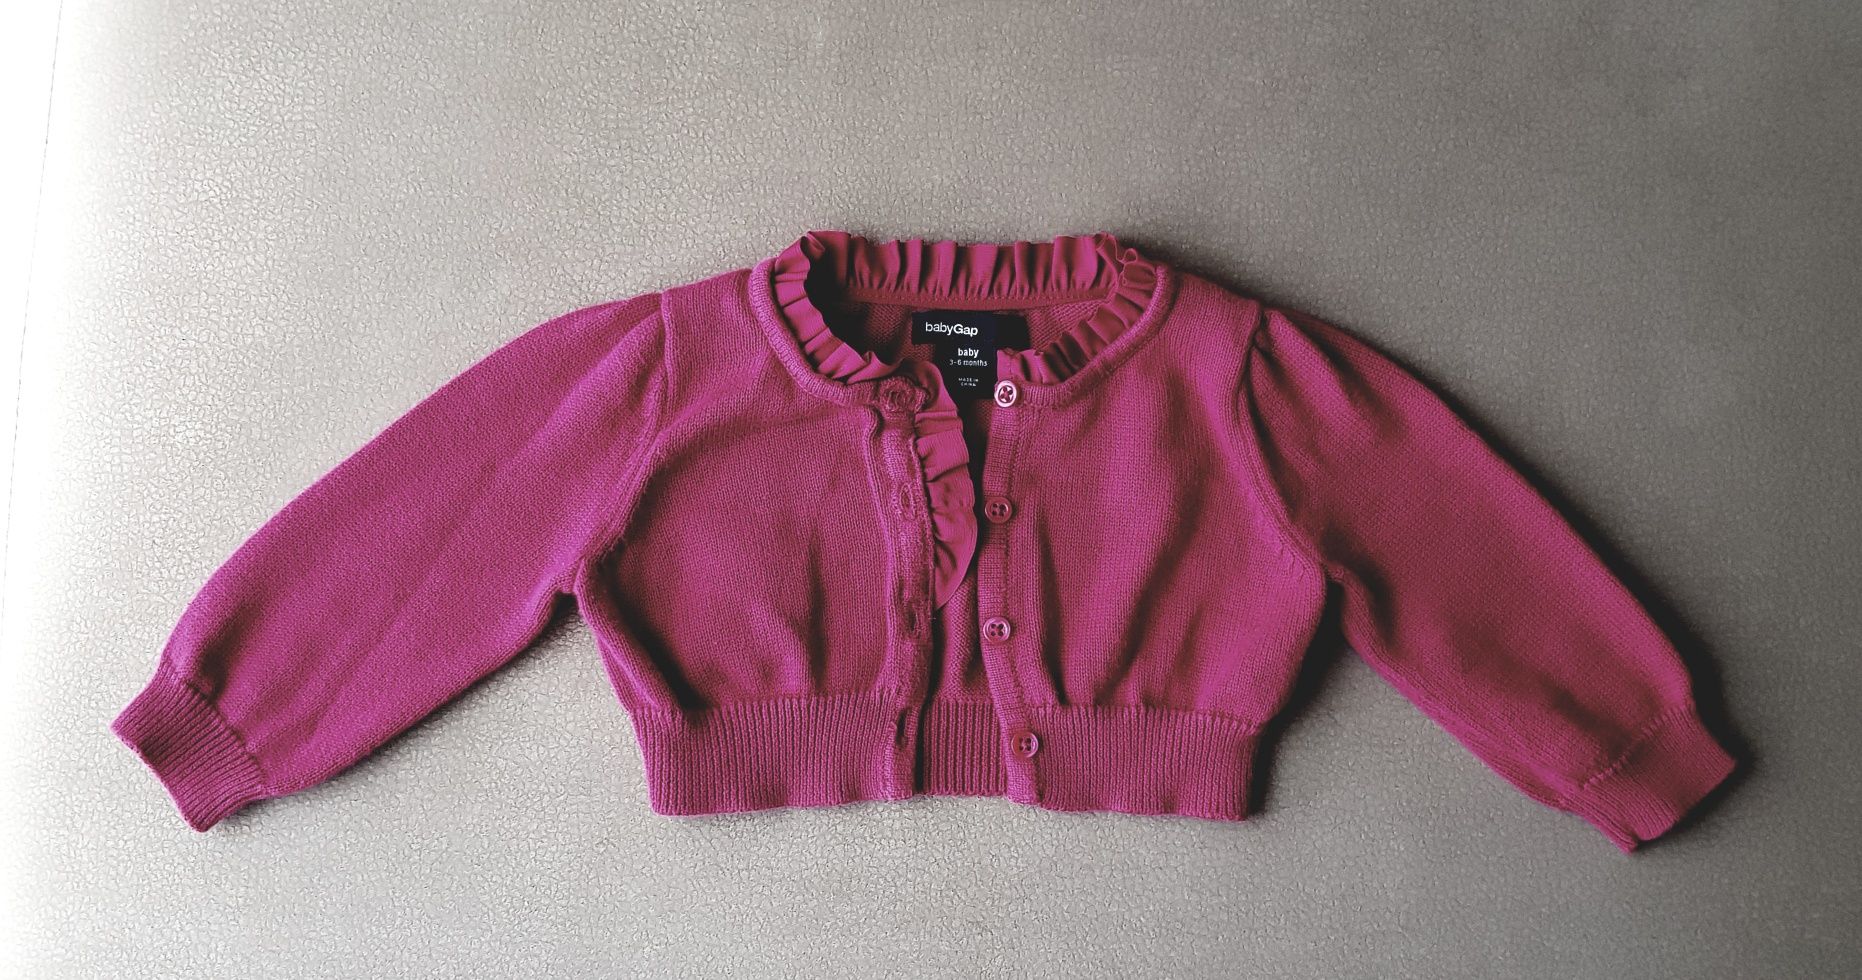 Sweterek dziewczęcy Gap, 3-6 miesięcy, IDEAŁ